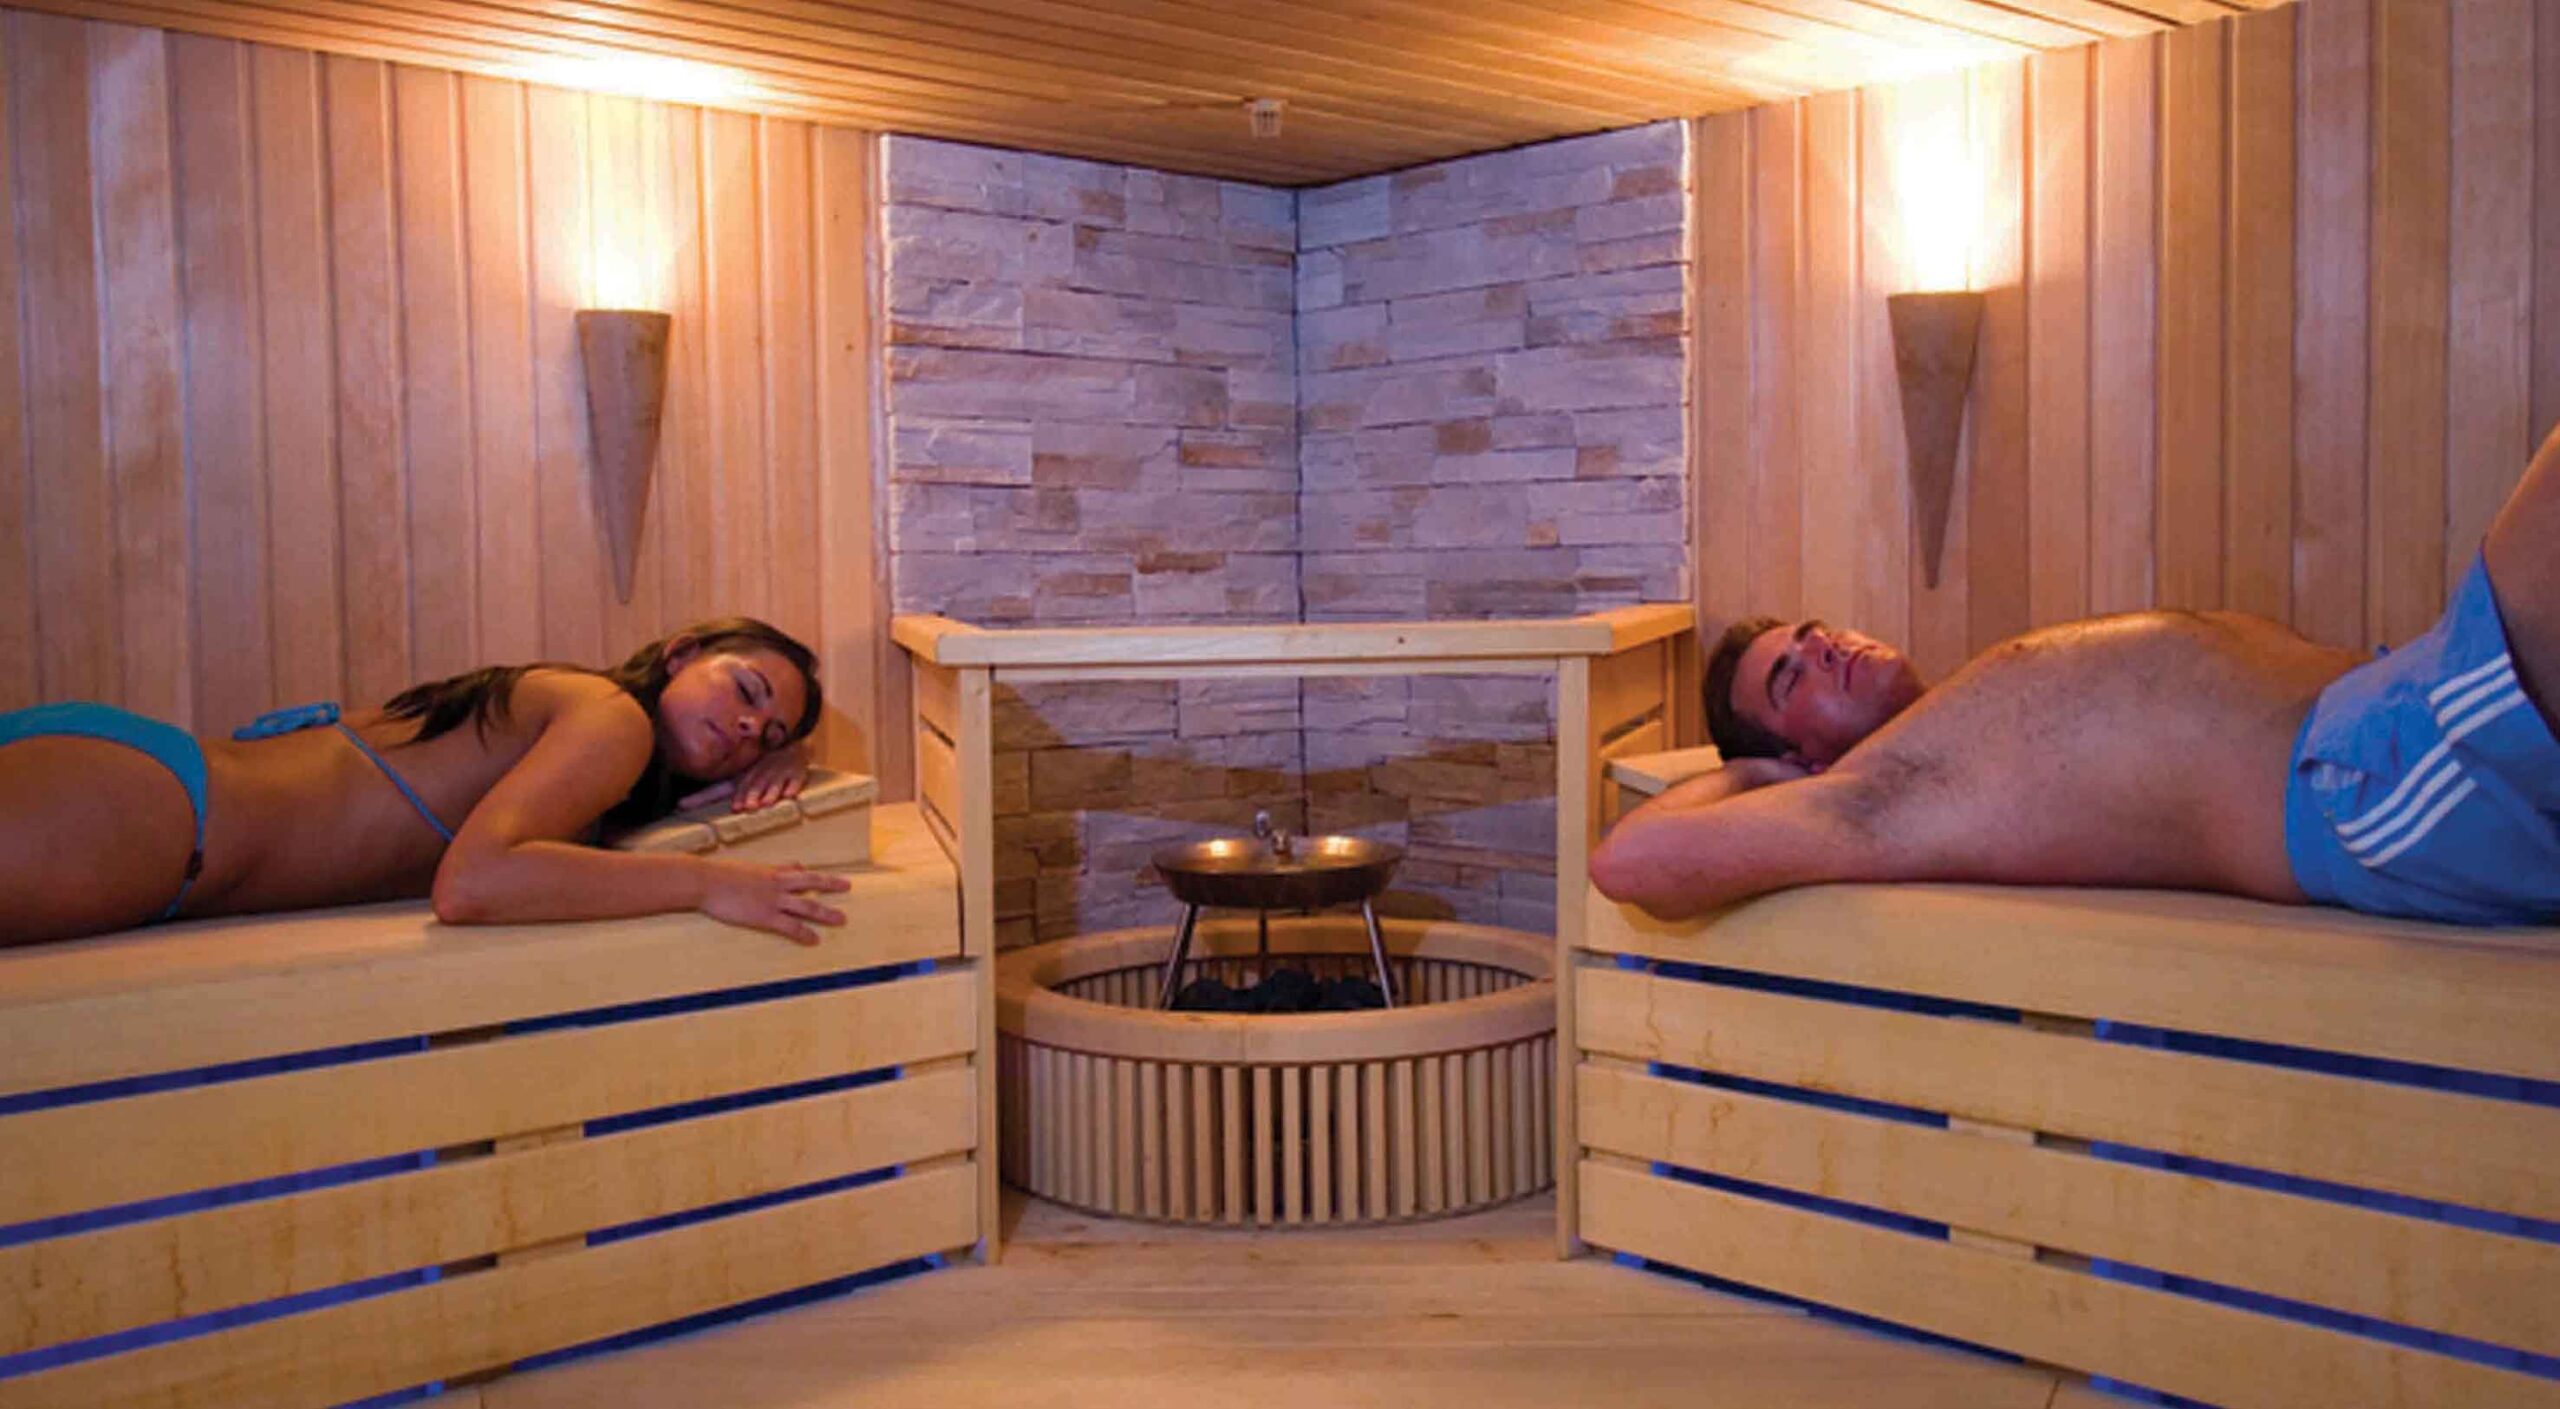 Deux personnes sont allongées dans un sauna équipé d'un poêle électrique.